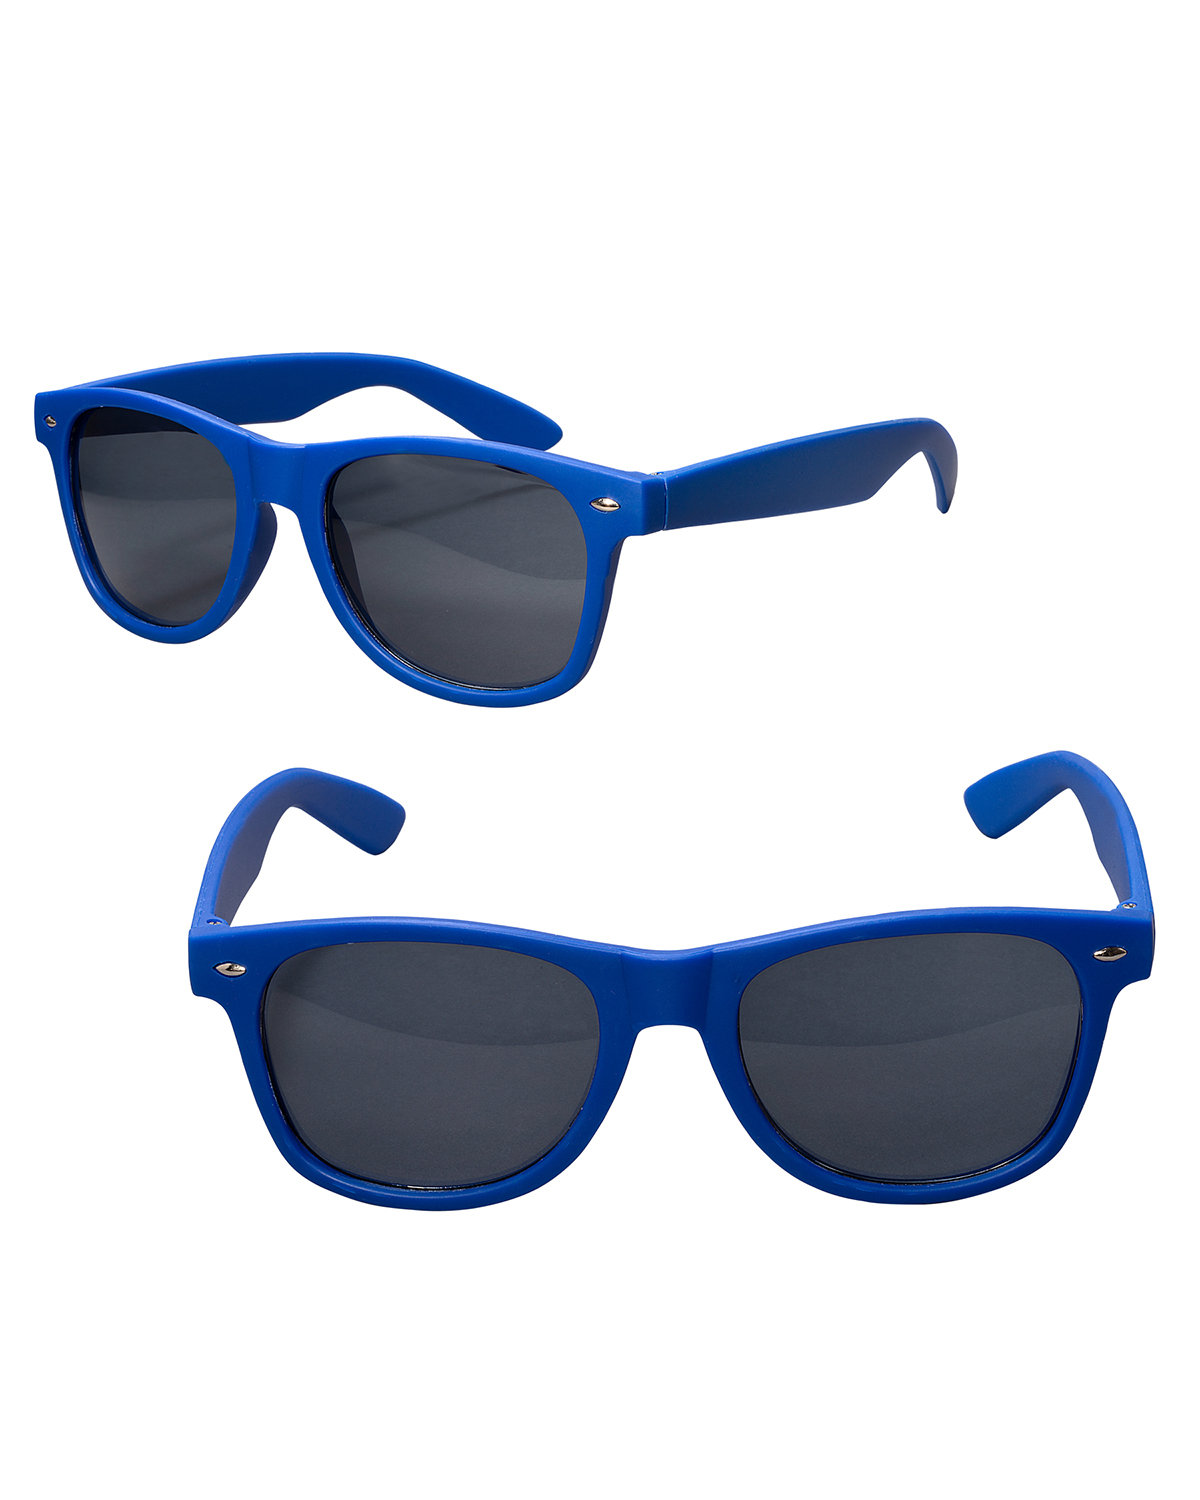 Prime Line Rubberized Finish Fashion Sunglasses reflex blue 